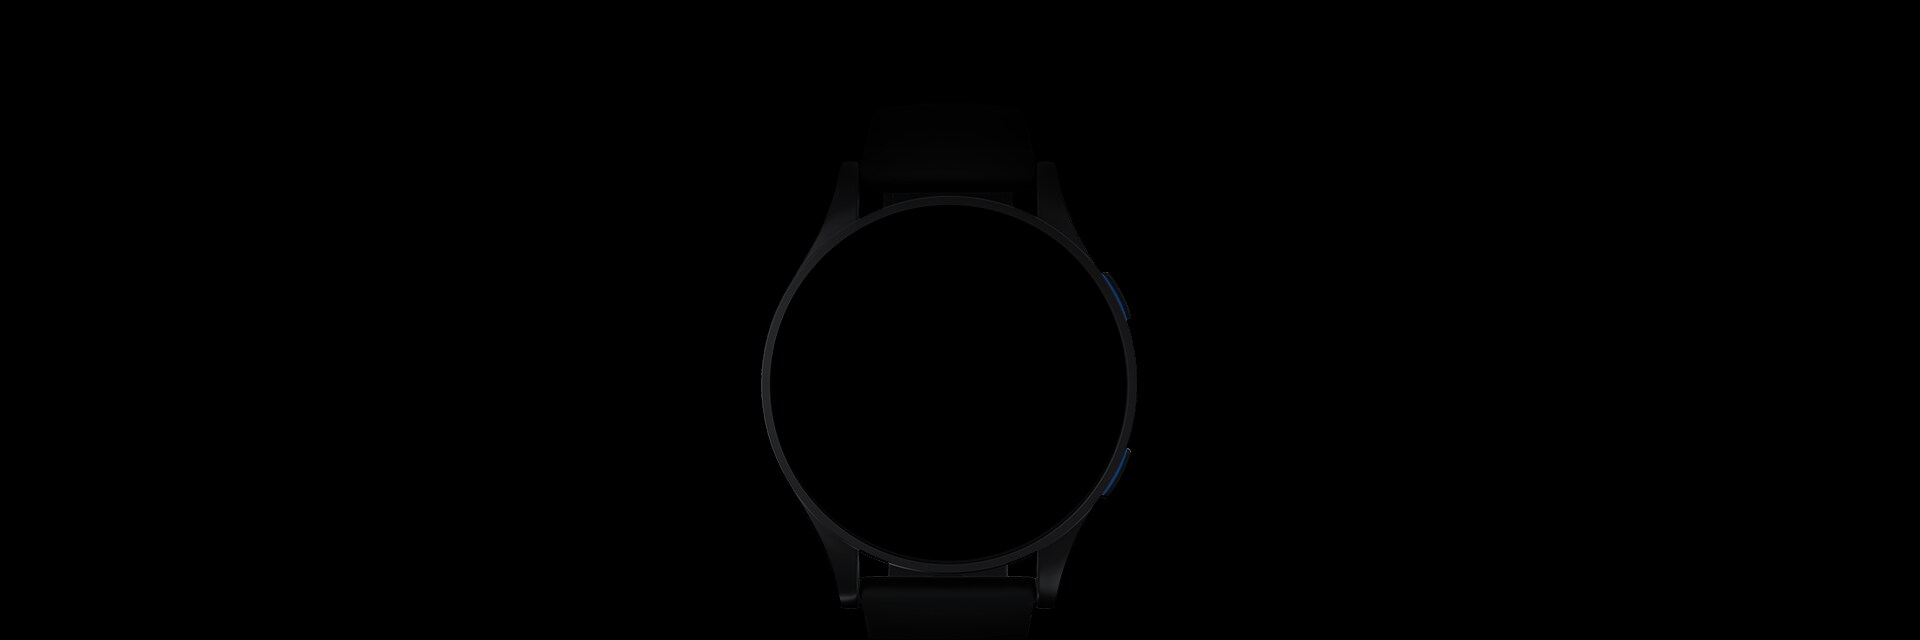 搭载三星Exynos W930的智能手表。